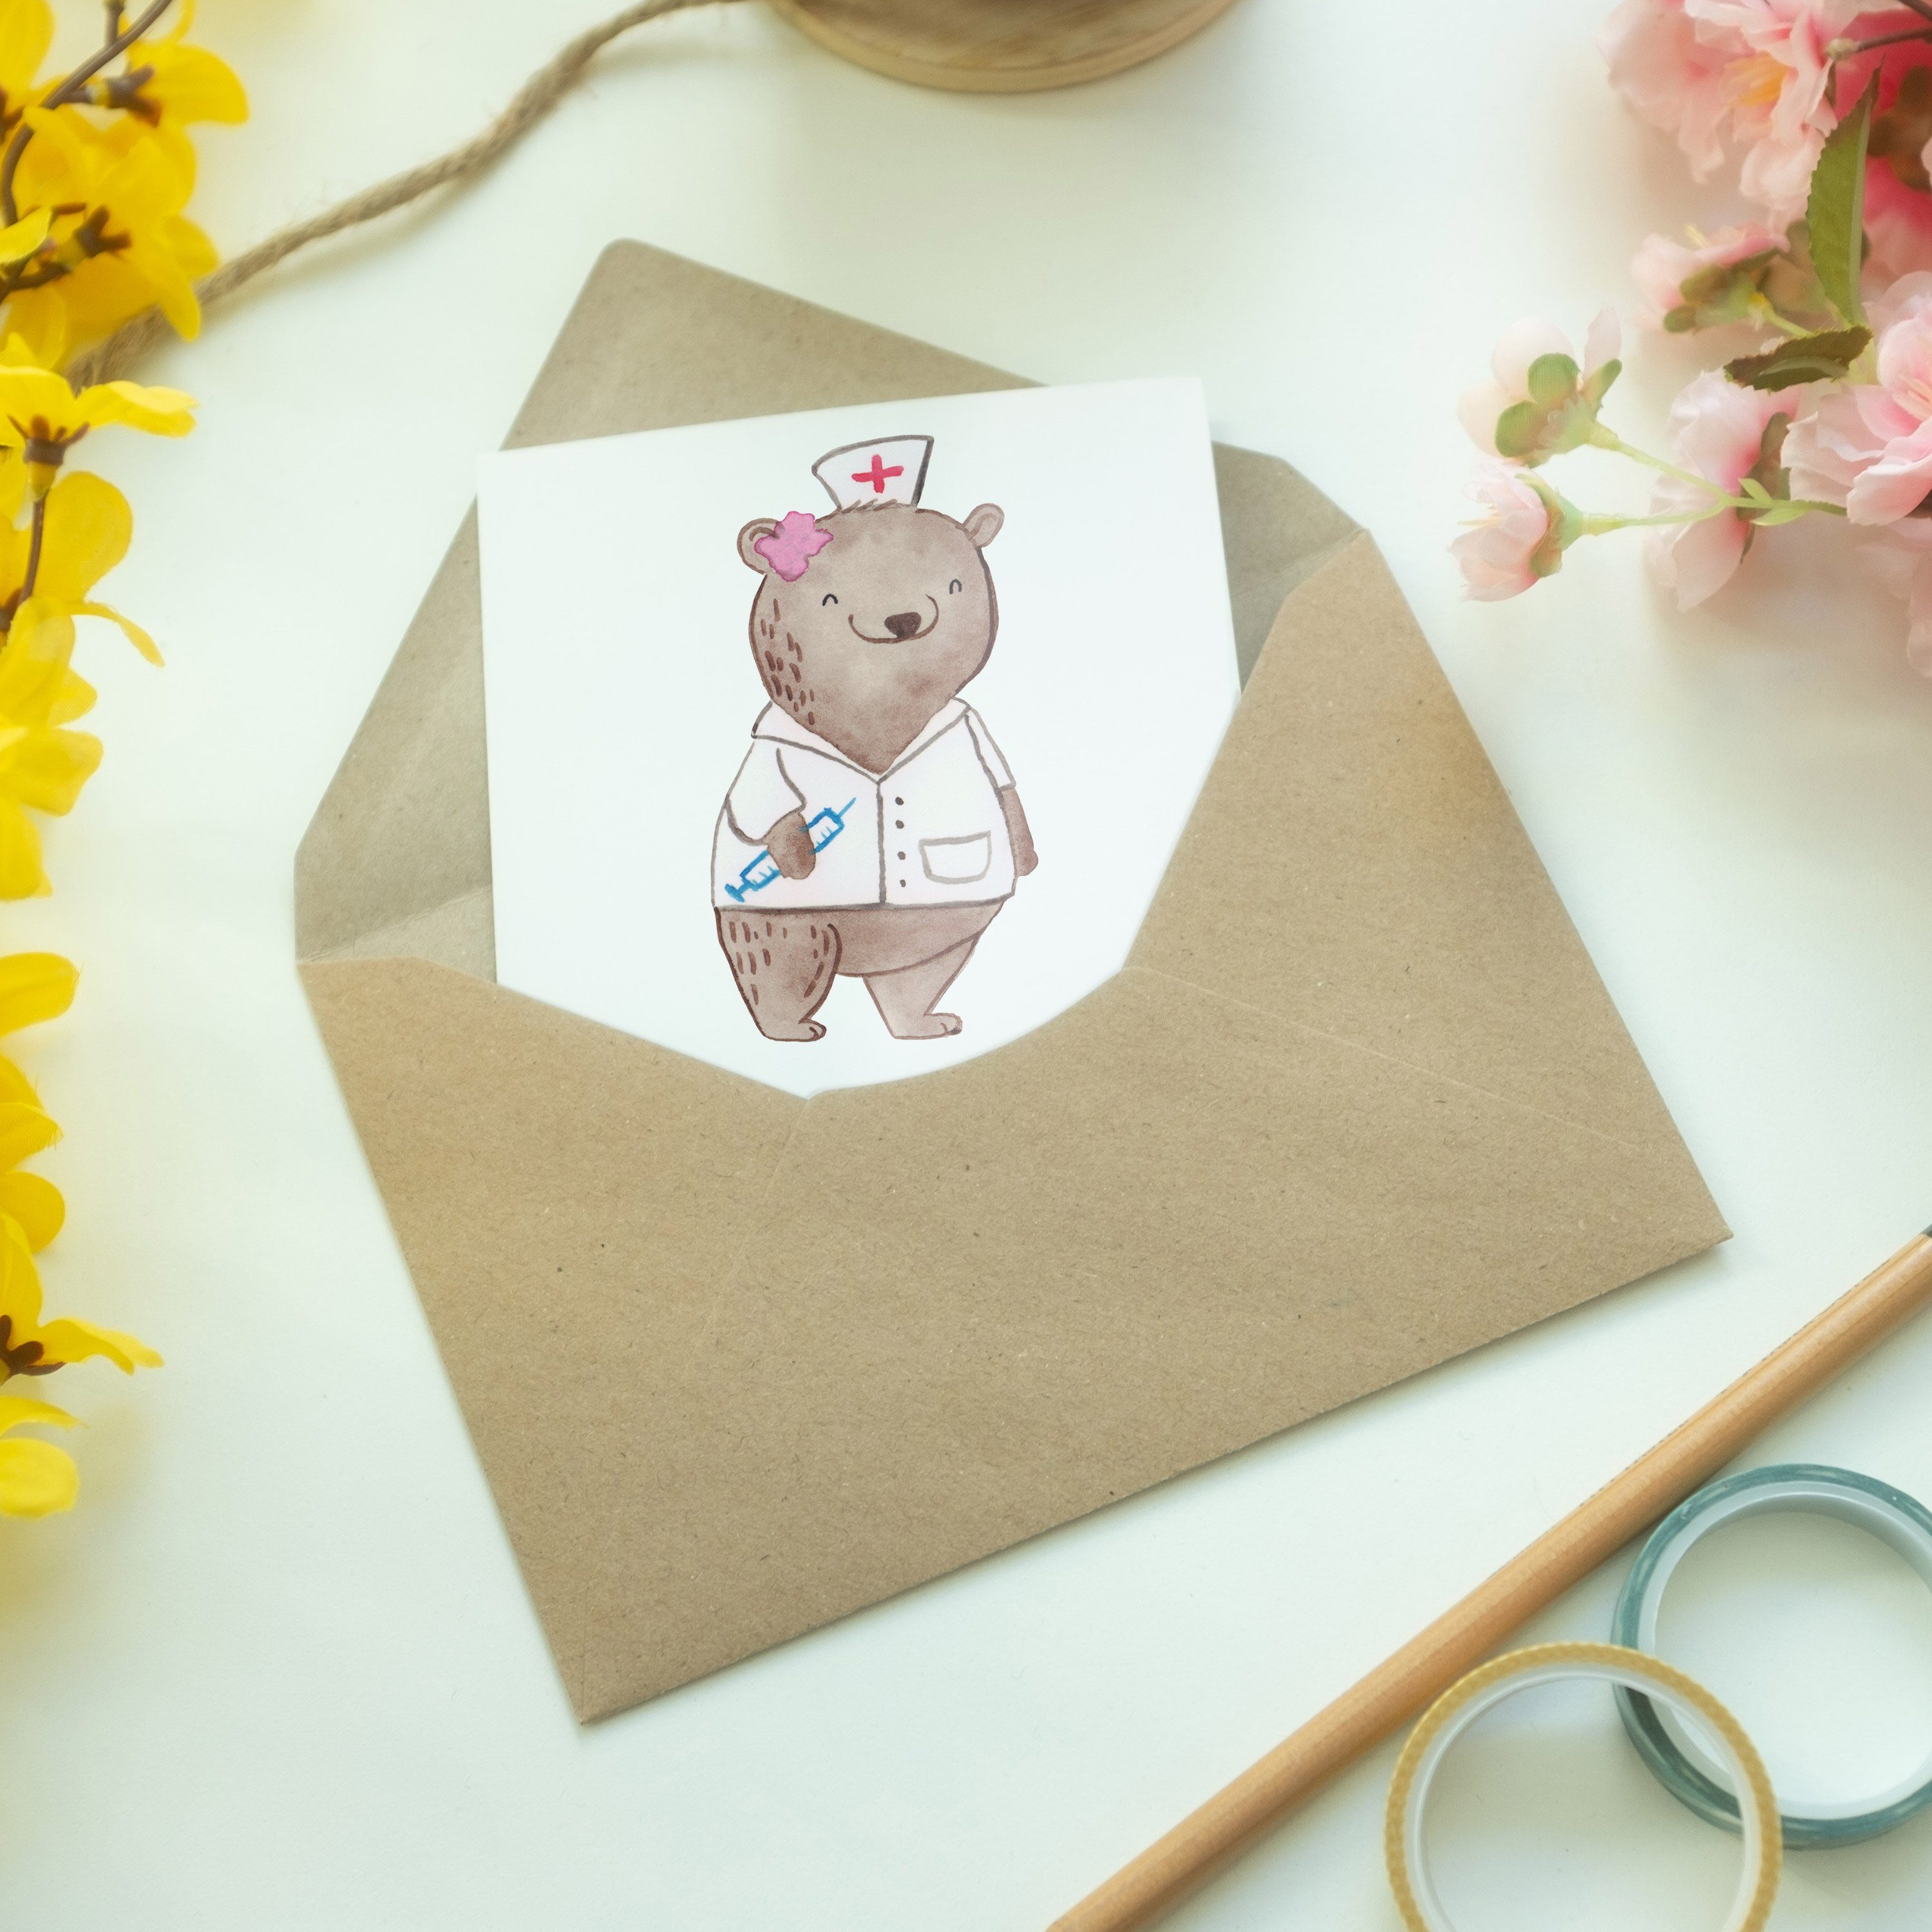 Doktorin, Mr. Mrs. & - Jubiläum - Grußkarte Geschenk, Herz Panda Weiß Ärztin Medizinstudium, mit